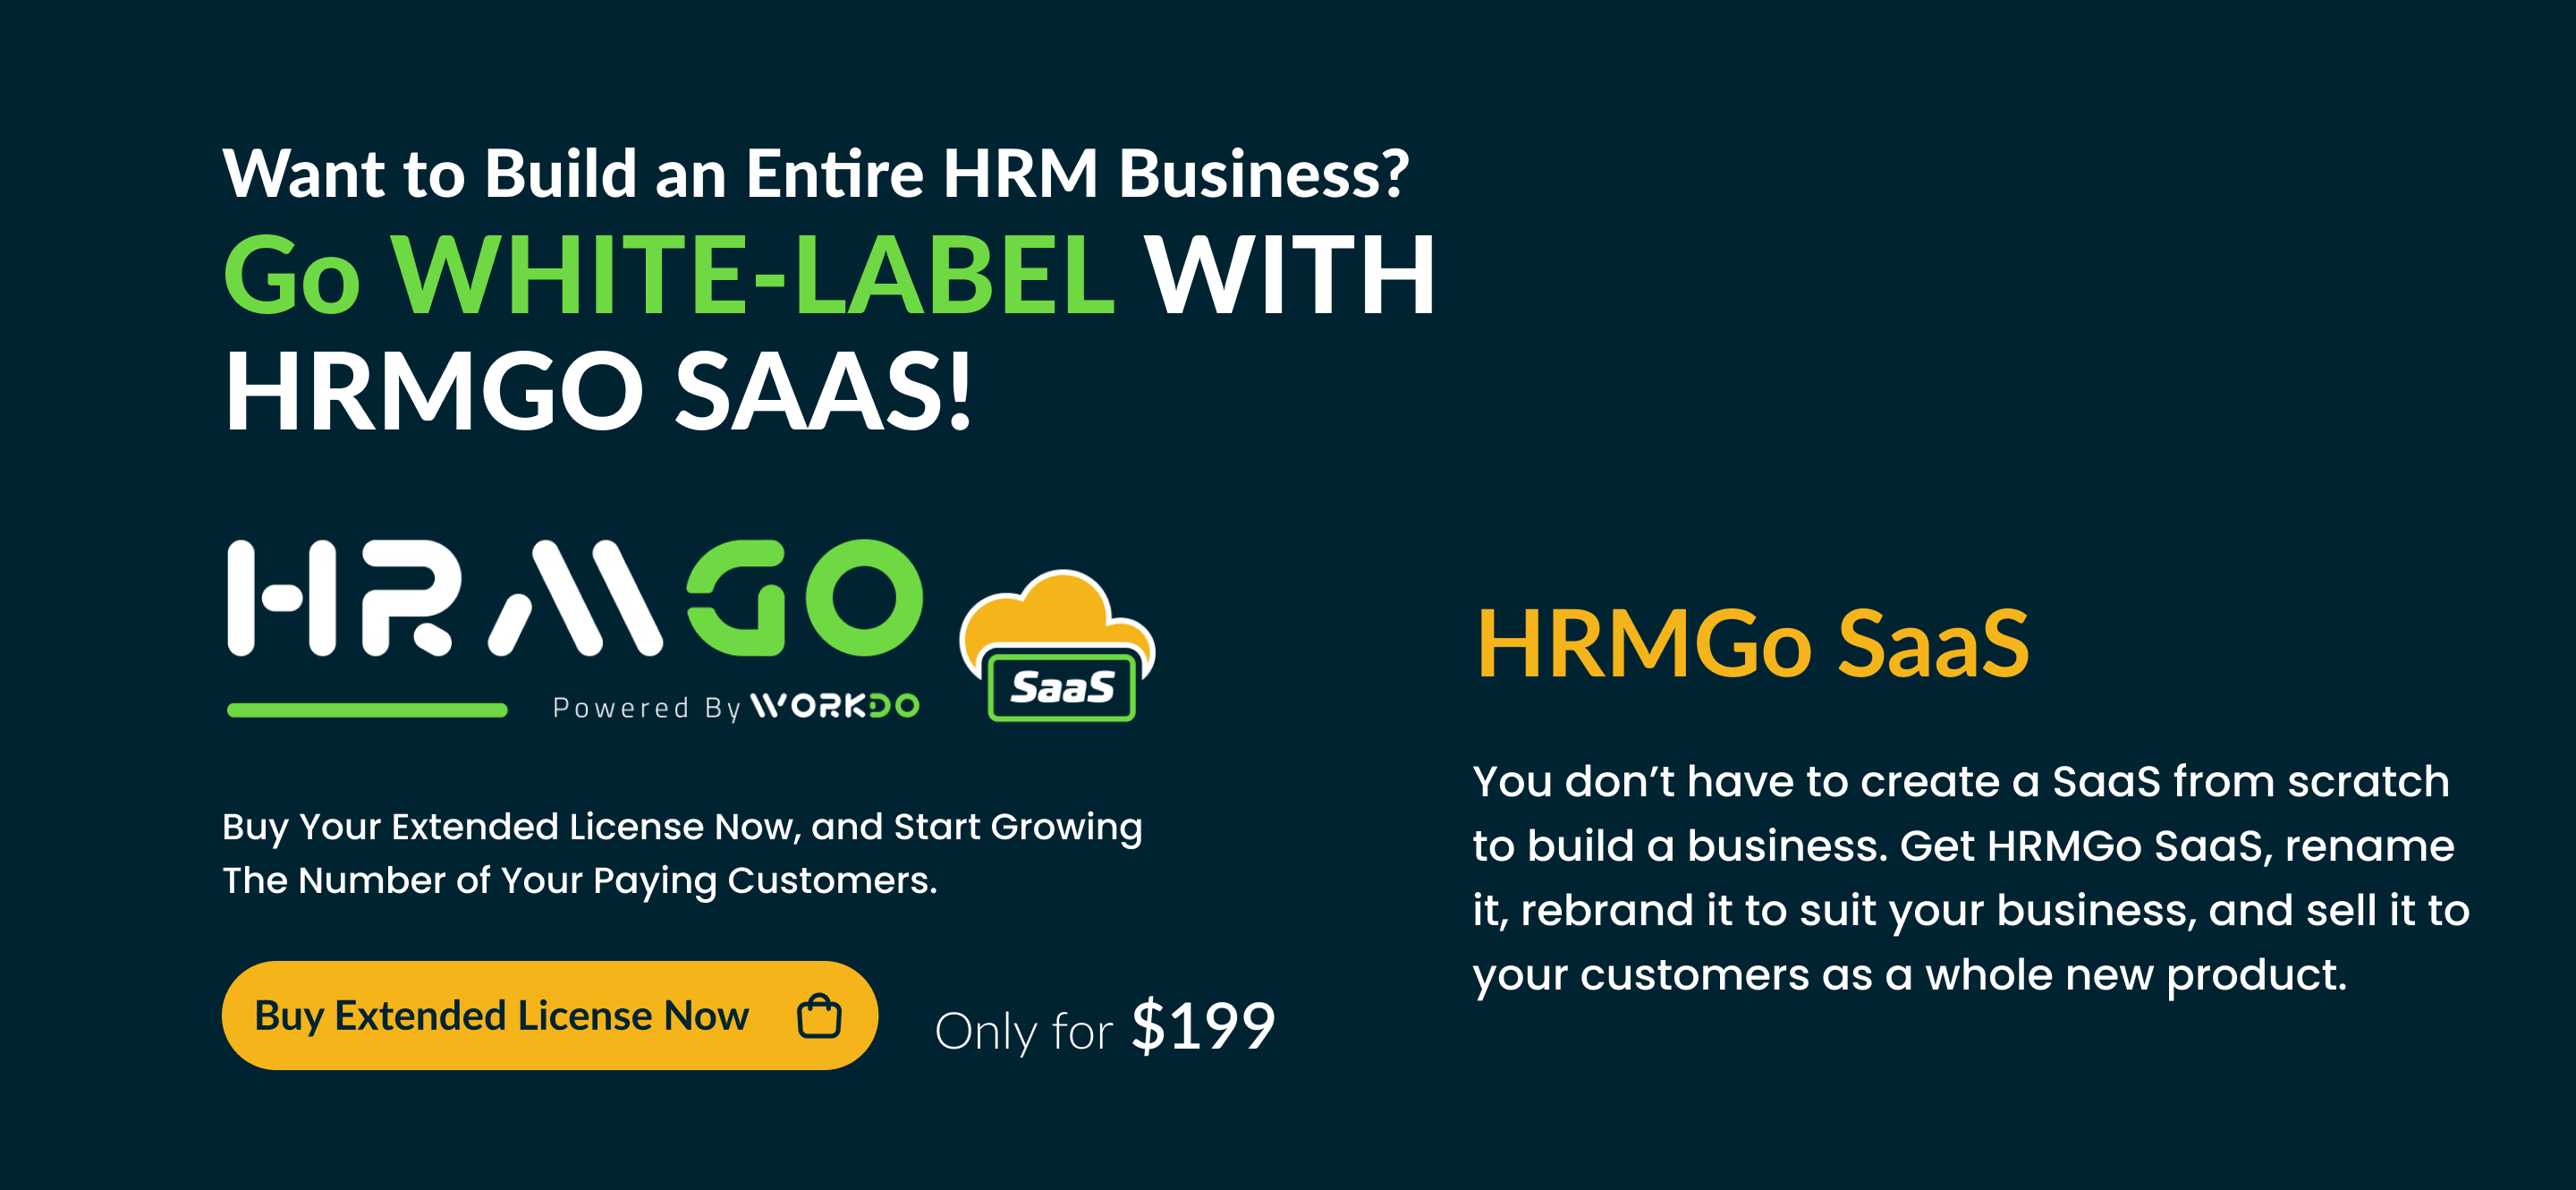 HRMGo SaaS - HRM and Payroll Tool - 9